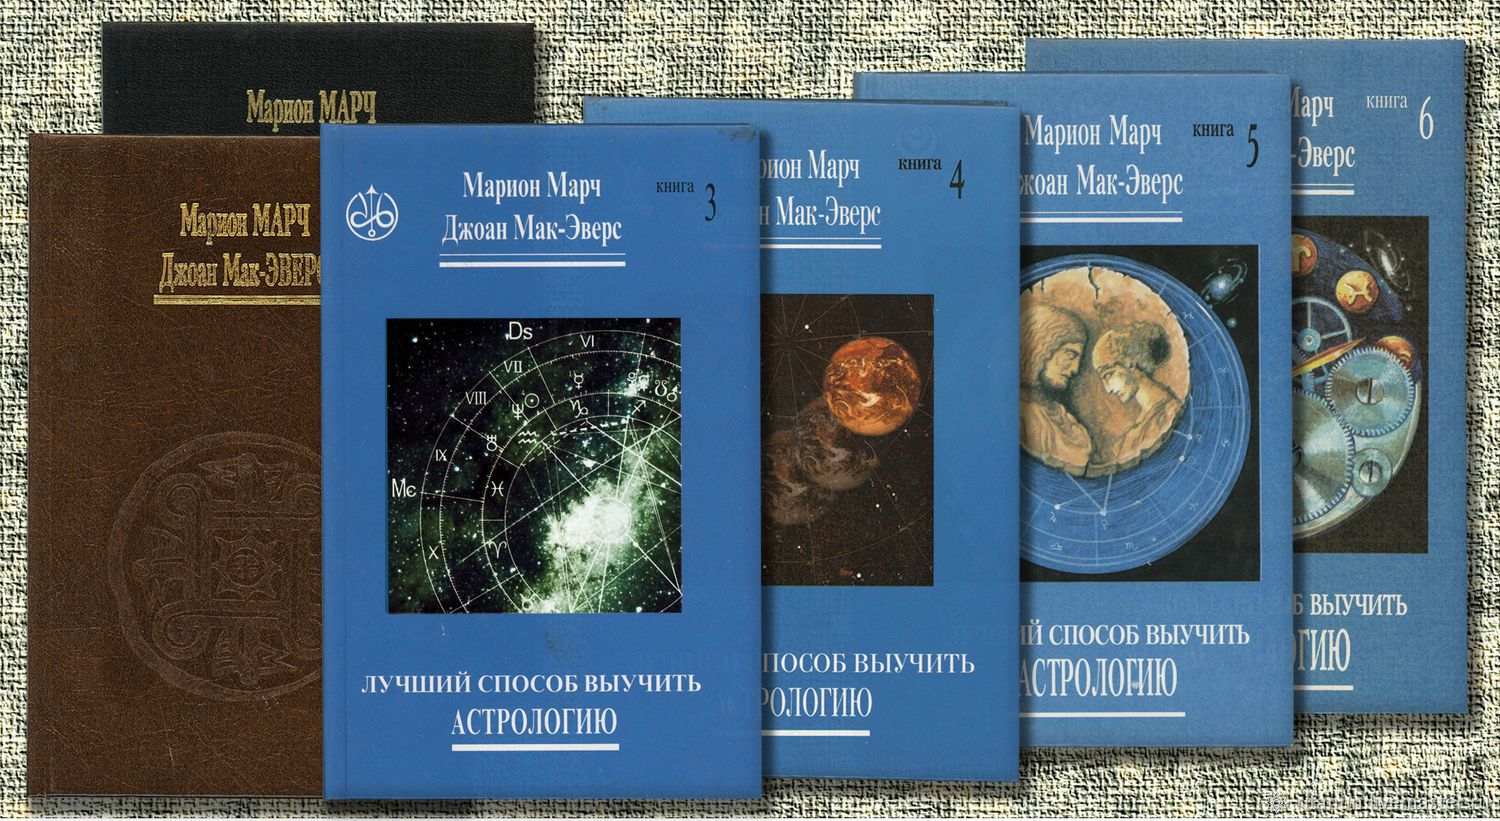 Лучший способ выучить астрологию» Марион Марч и Джоан Мак-Эверс